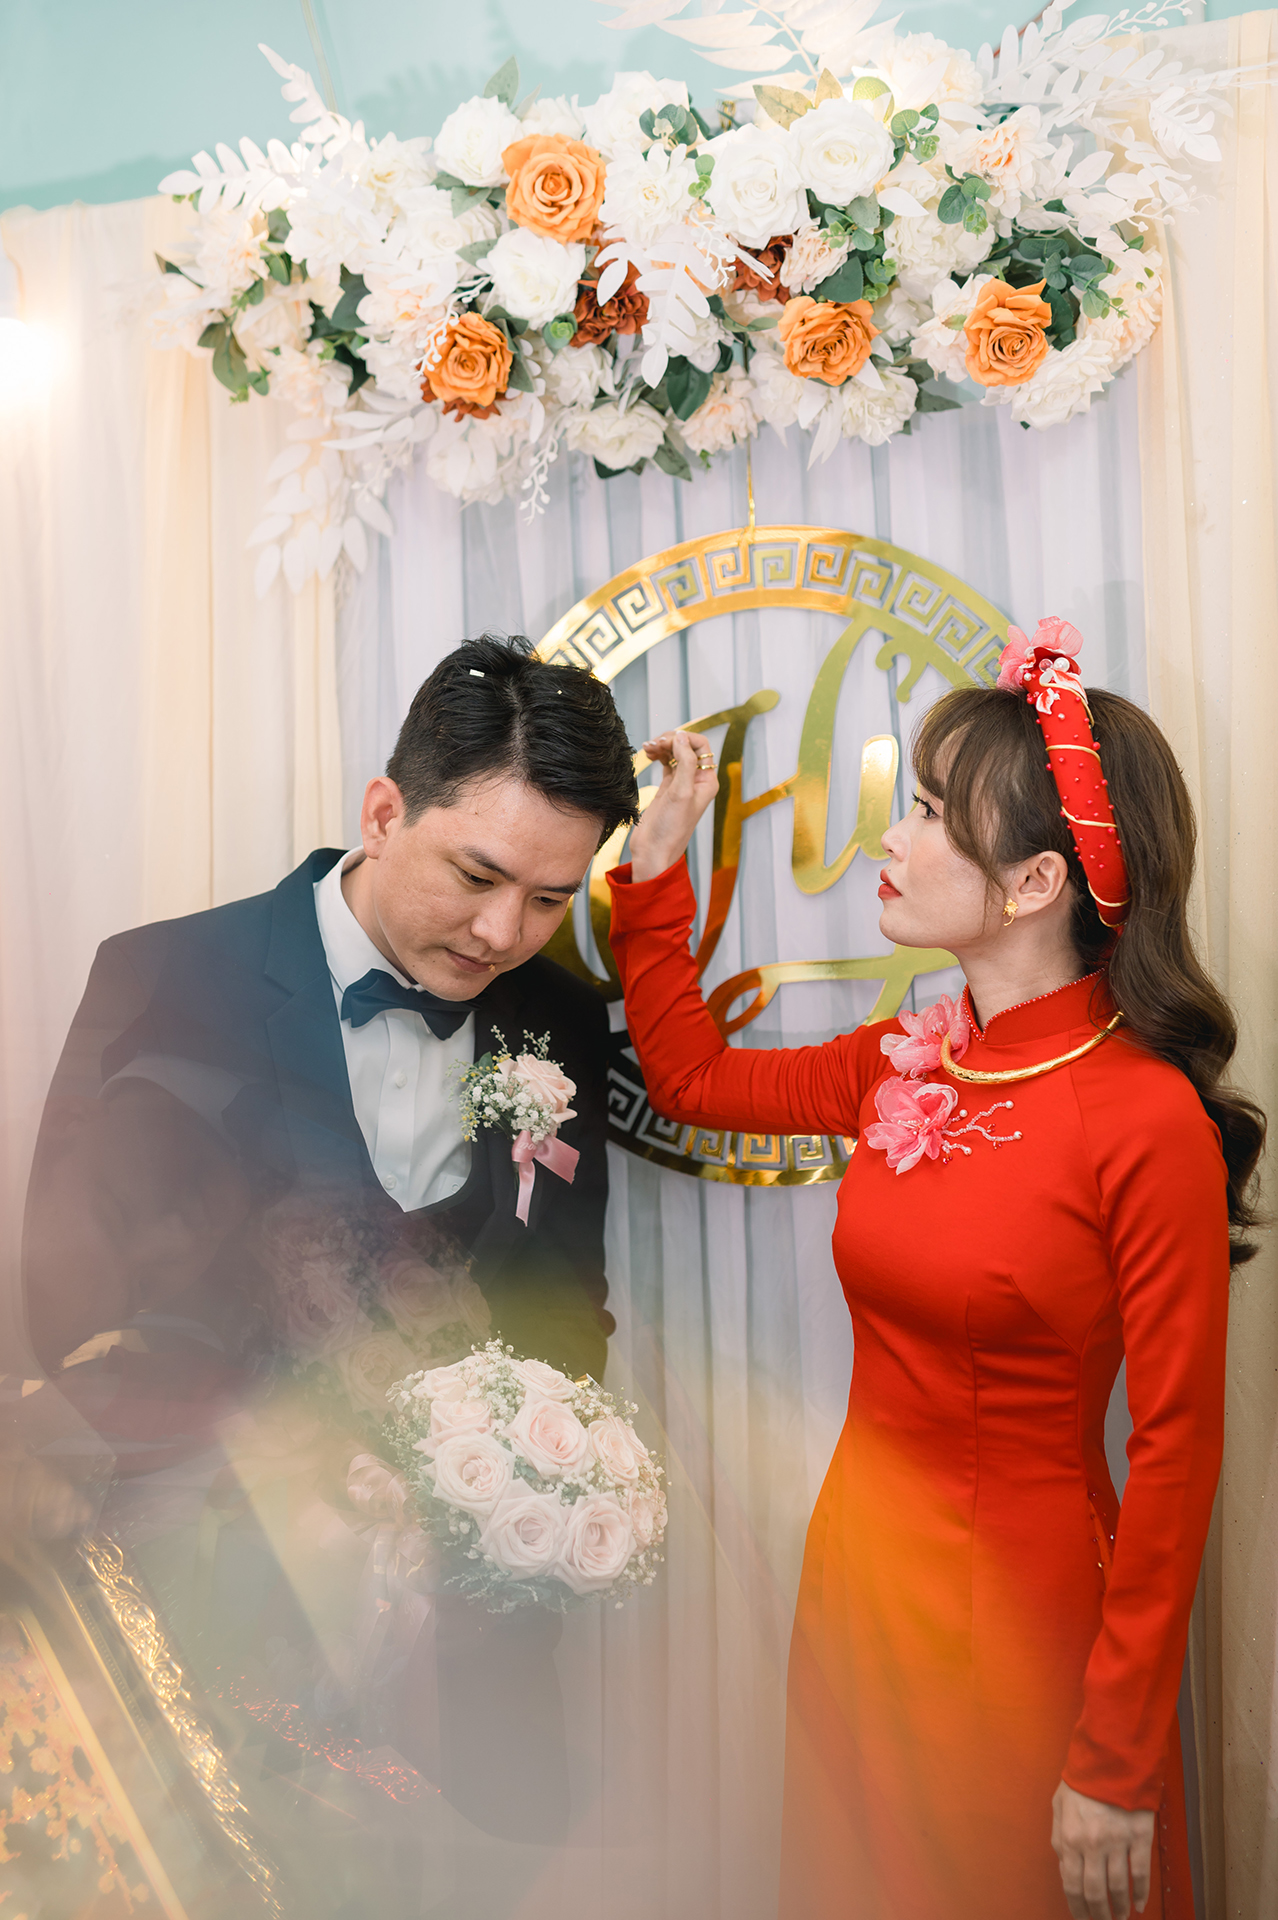 Huy Nguyen studio - Dịch vụ quay chụp phóng sự cưới nổi tiếng ở TPHCM